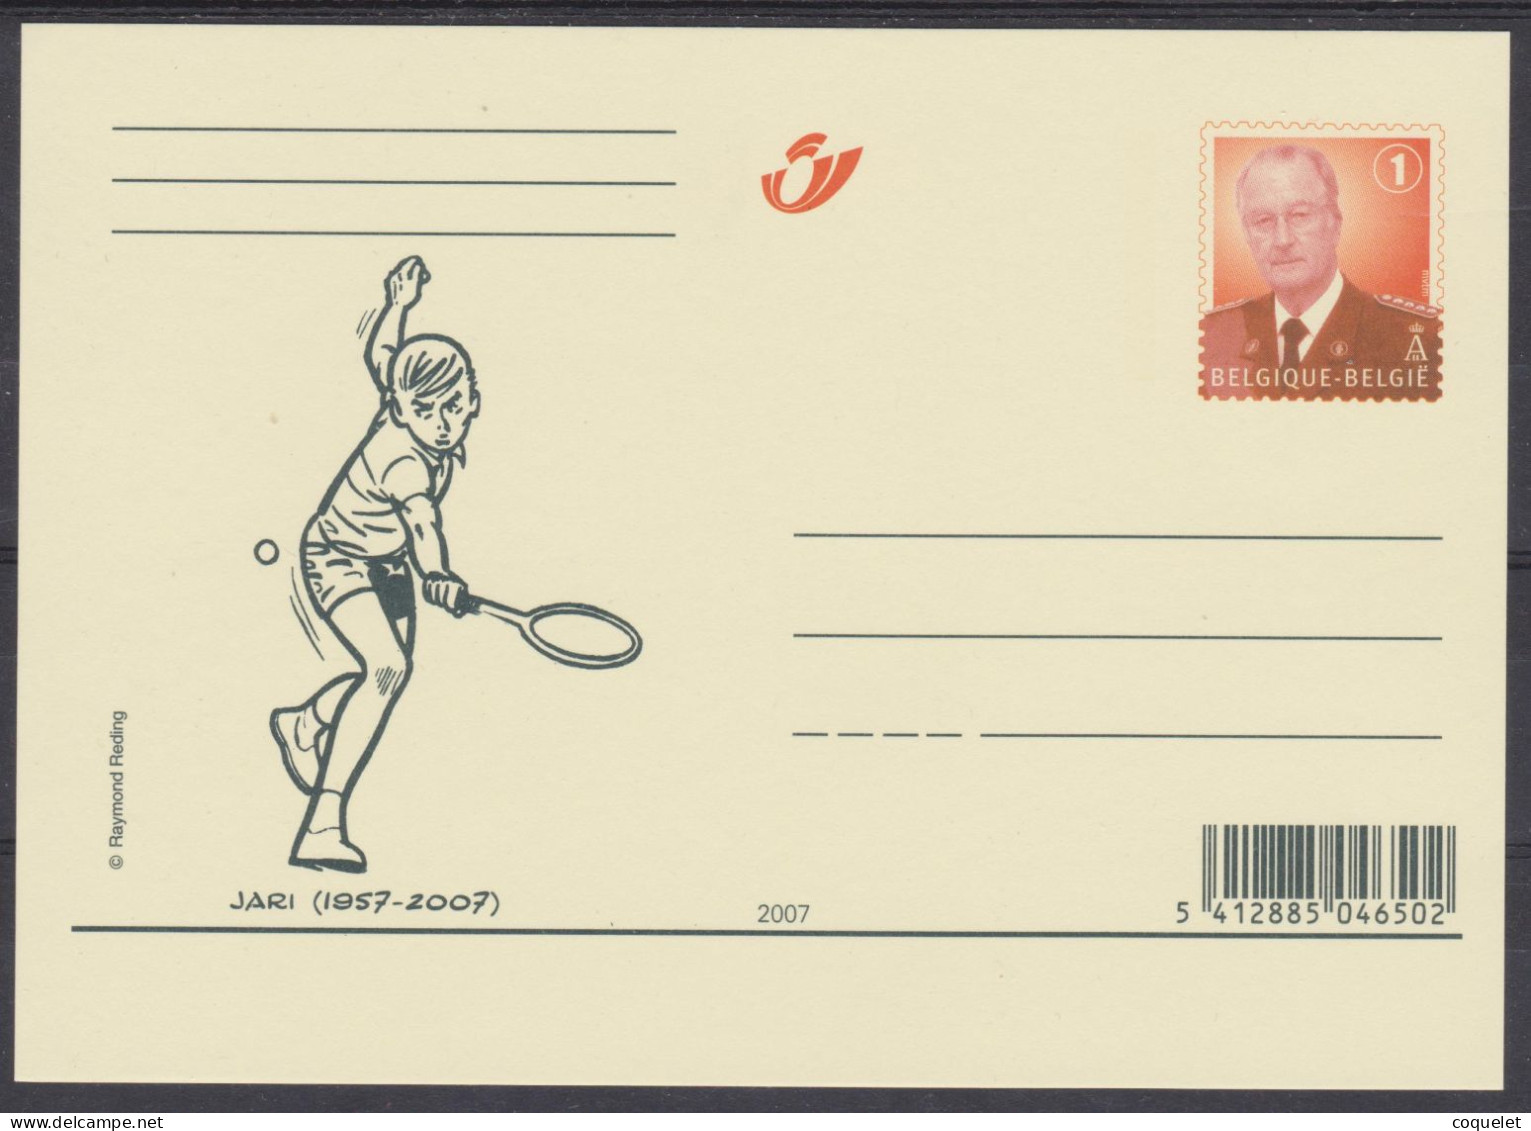 Belgique -entiers Postaux -cartes Illustrées N°105 #  JARI #(avec 1 Pour Indiquer L'échelle Du Port) - Tennis